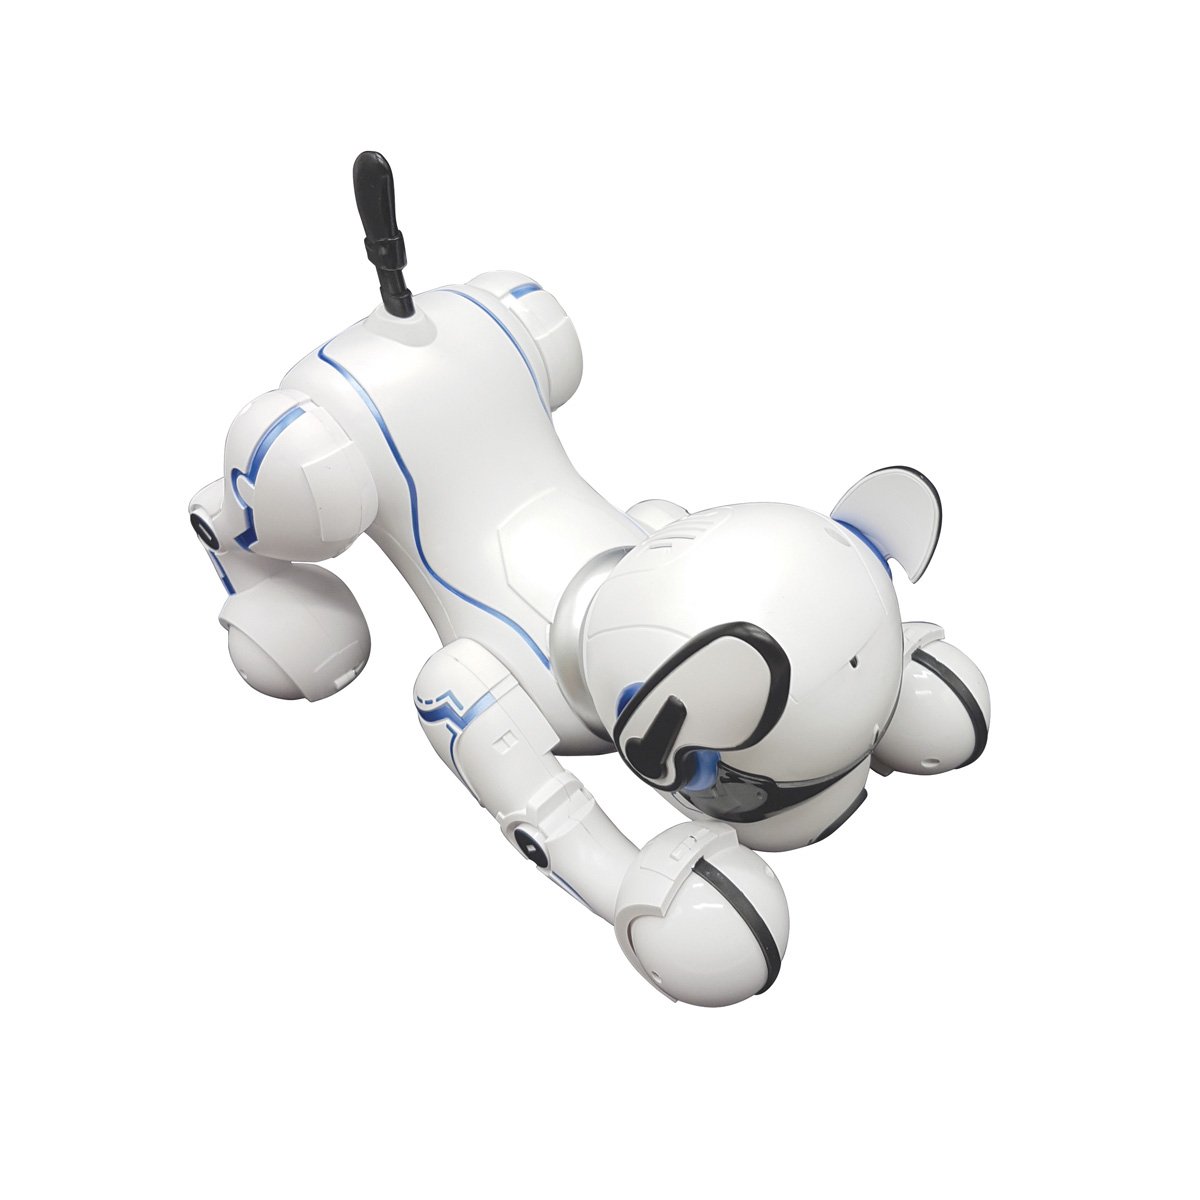 LEXIBOOK POWER PUPPY Programmierbarer Roboterhund Lernroboter, Schwarz/Weiß